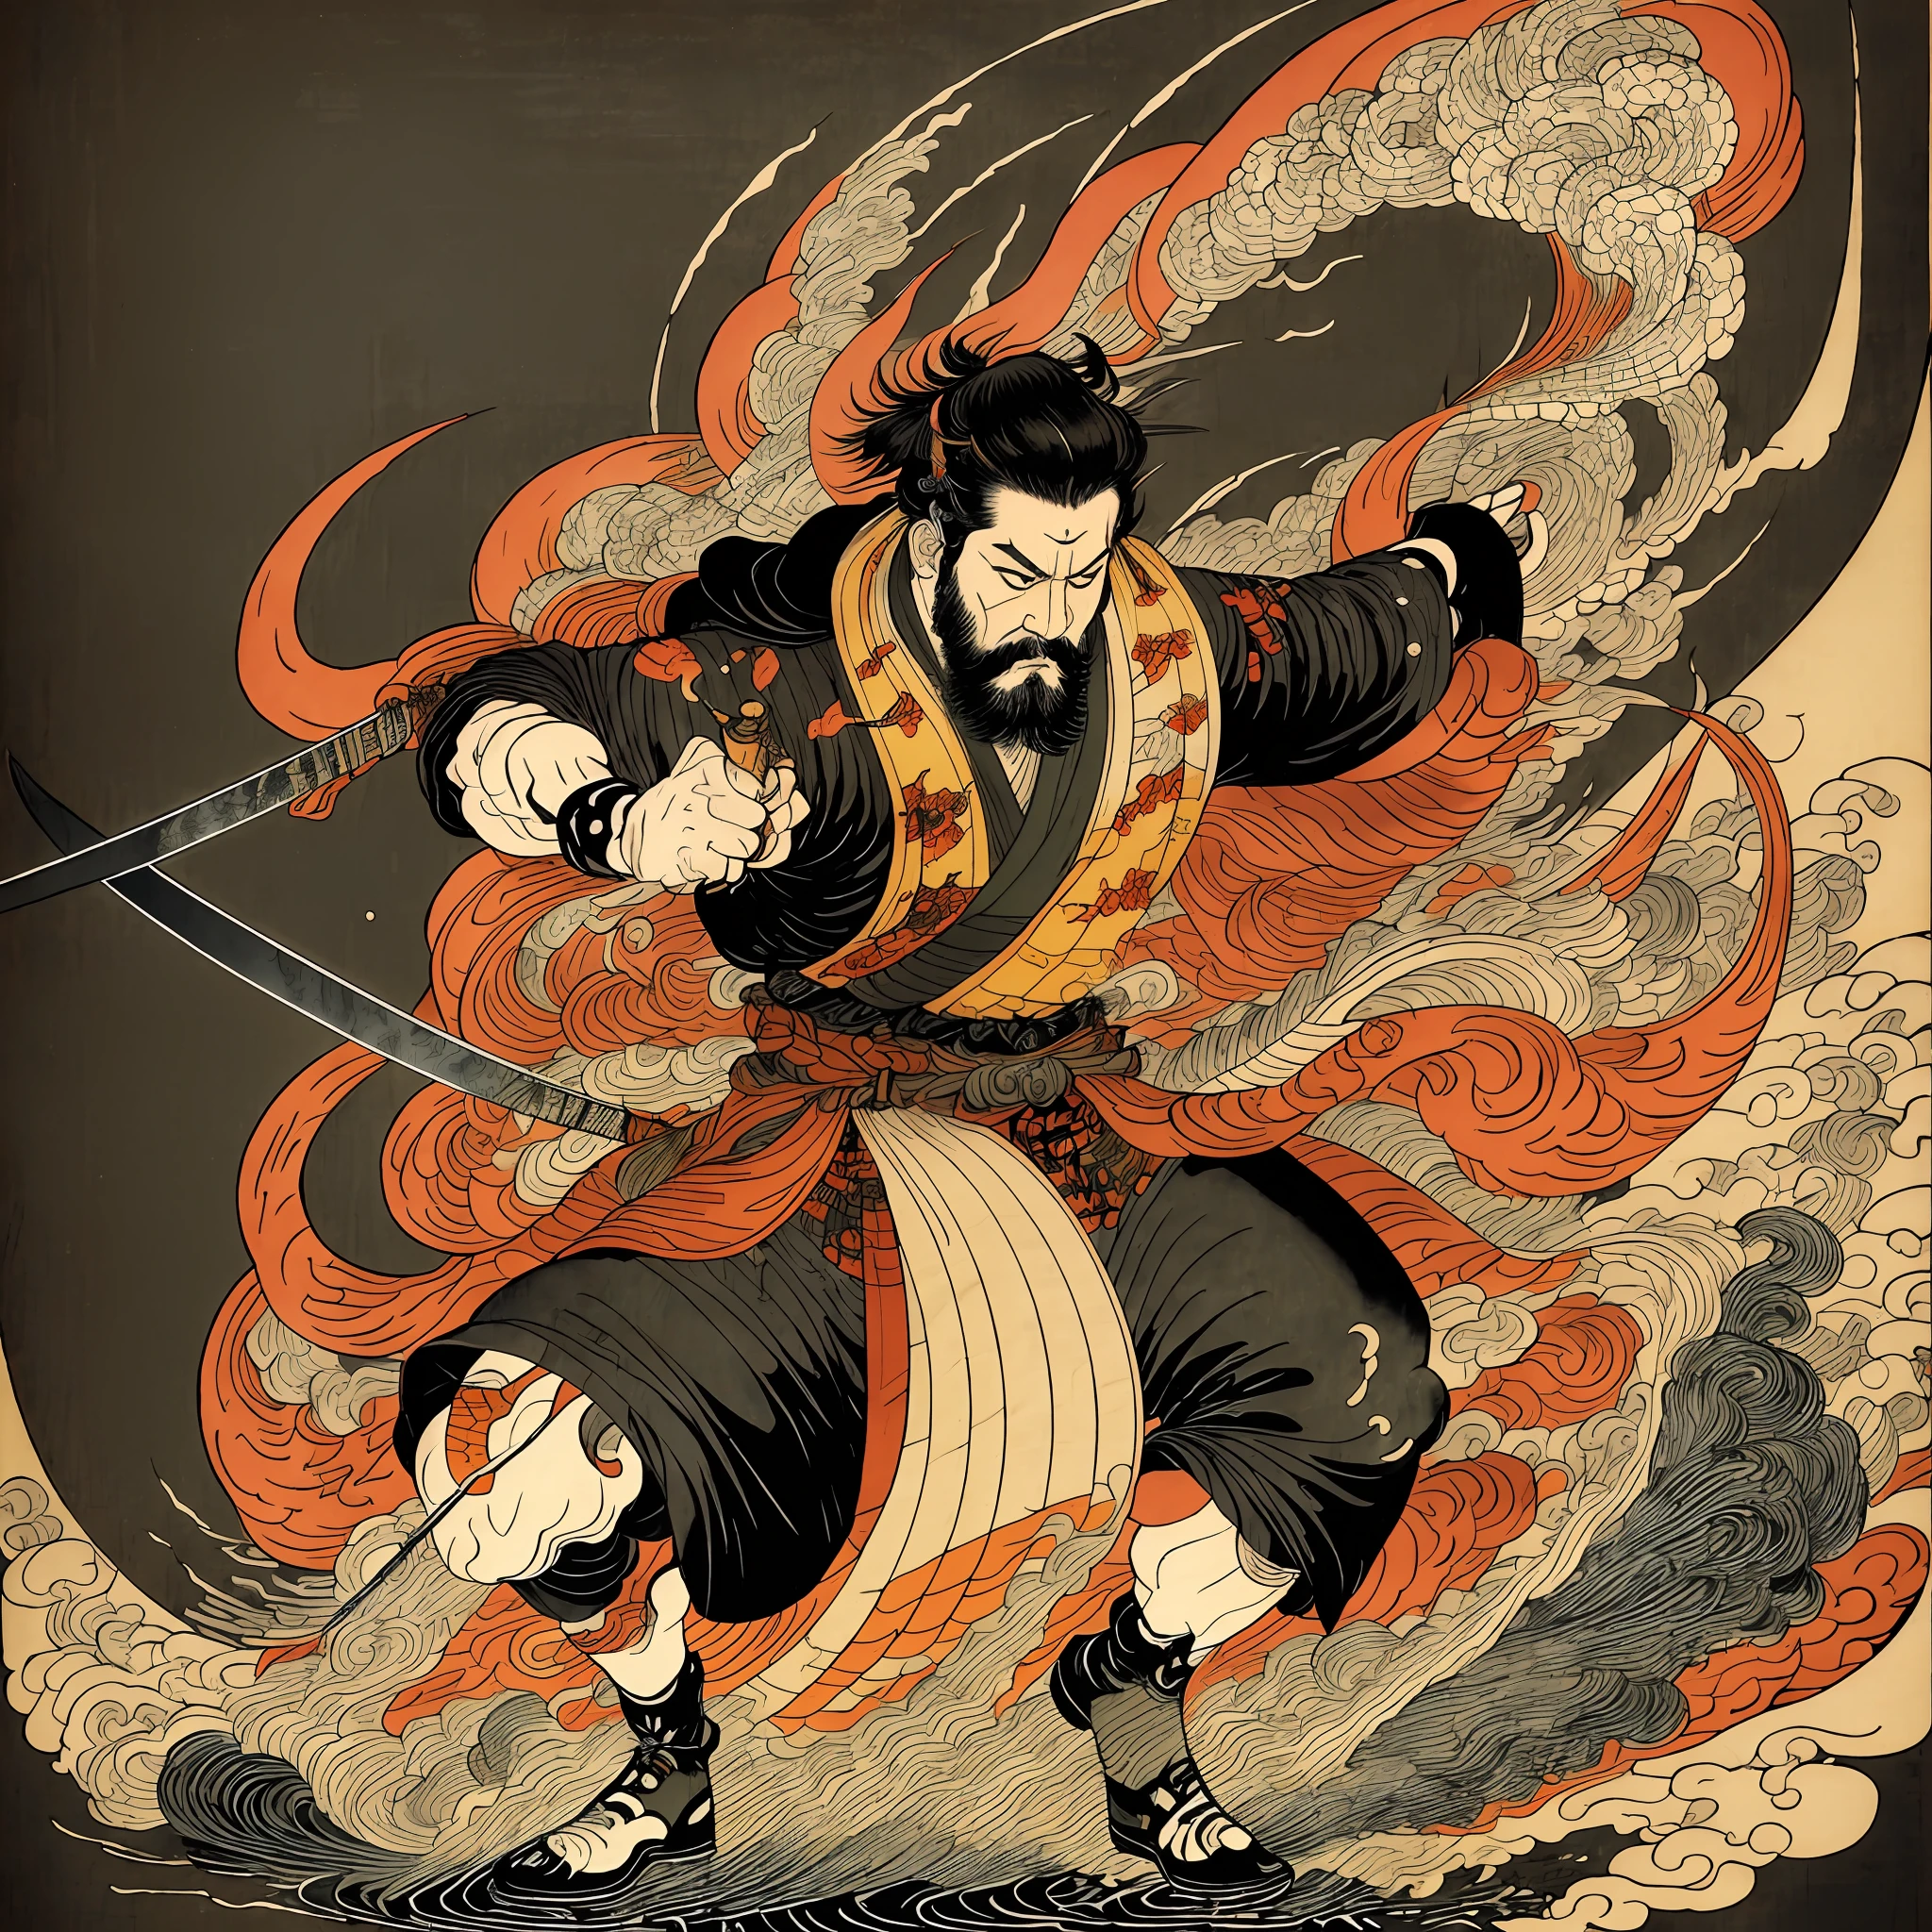 Es una pintura de cuerpo entero con colores naturales al estilo del ukiyo-e.. Un samurái japonés con un cuerpo grande como un hombre fuerte.. tiene una cara áspera, pelo negro corto, y un corto, barba recortada. Lleva un kimono negro. La hakama debe ser un poco más larga y dibujar una forma fluida que ondee con el viento.. Tiene una espada en su mano derecha y llamas salen de su espada japonesa.. El fondo es una llama arremolinada al estilo Katsushika Hokusai.. Obra maestra estilo ukiyo-e de alta resolución, con la más alta calidad --auto --s2